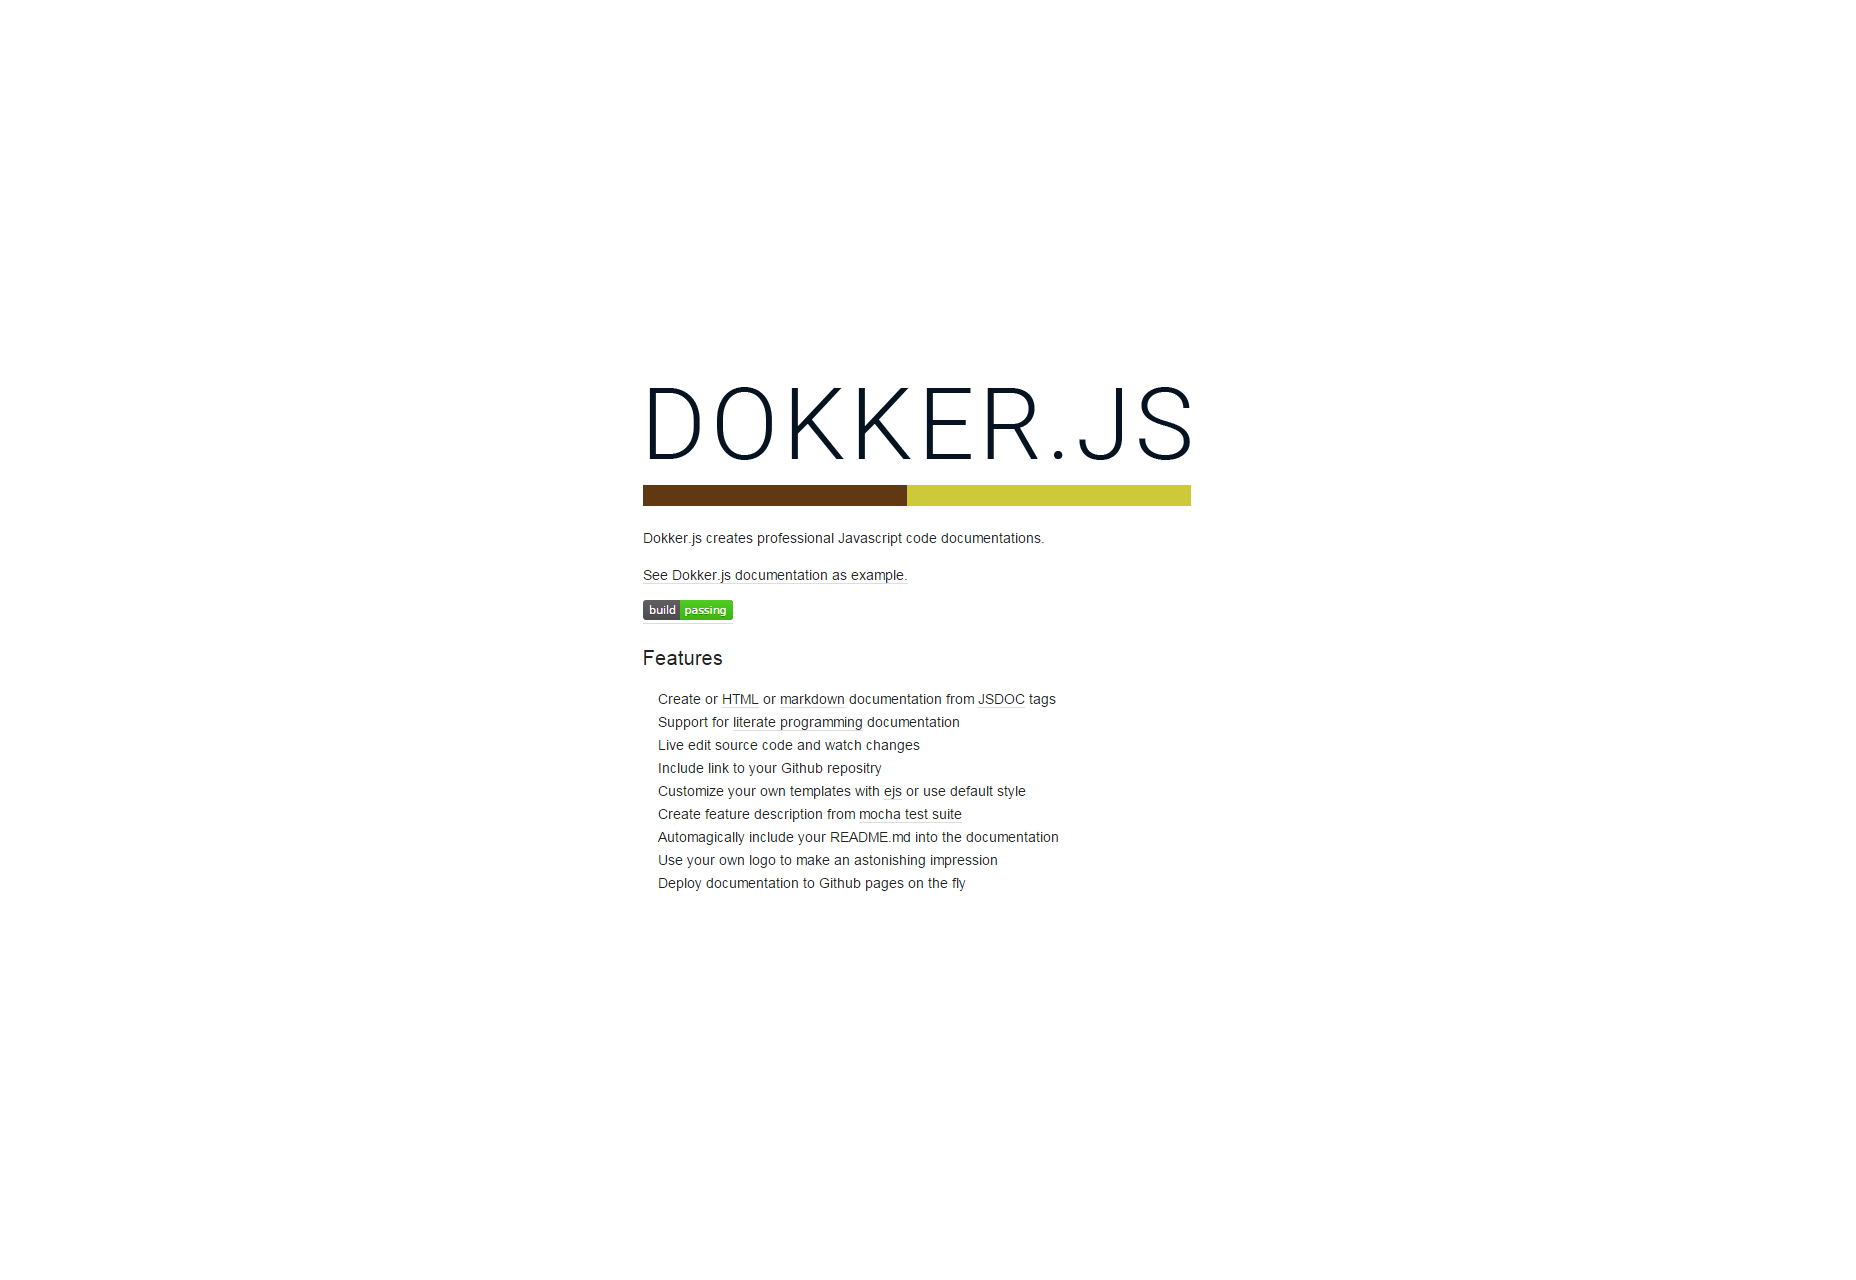 Dokker.js: Créateur de documentation de code Javascript professionnel